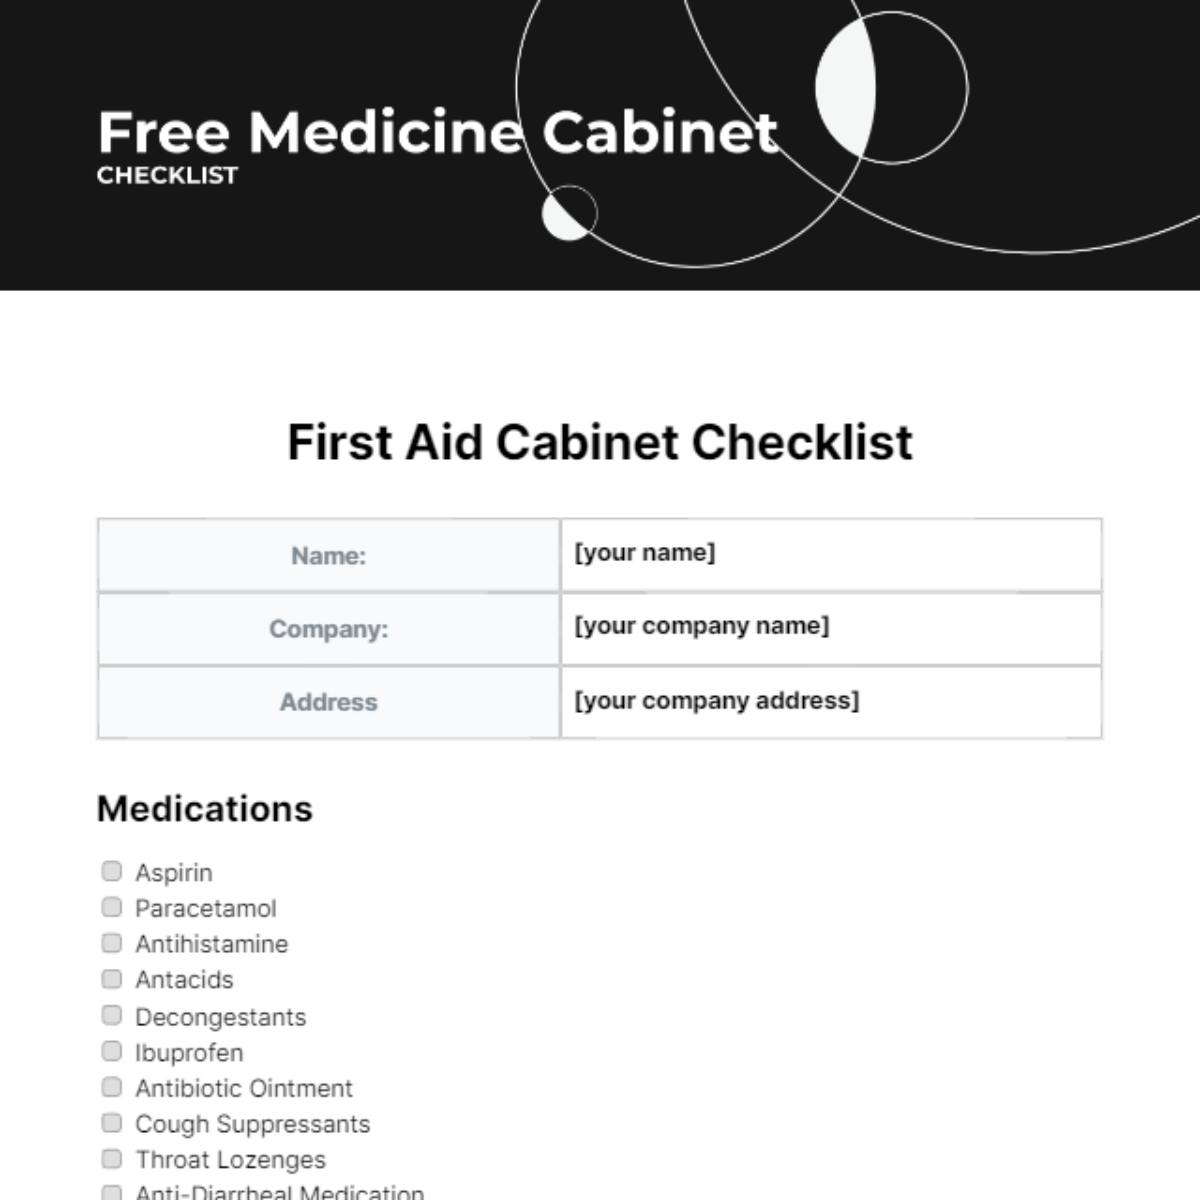 Free Medicine Cabinet Checklist Template